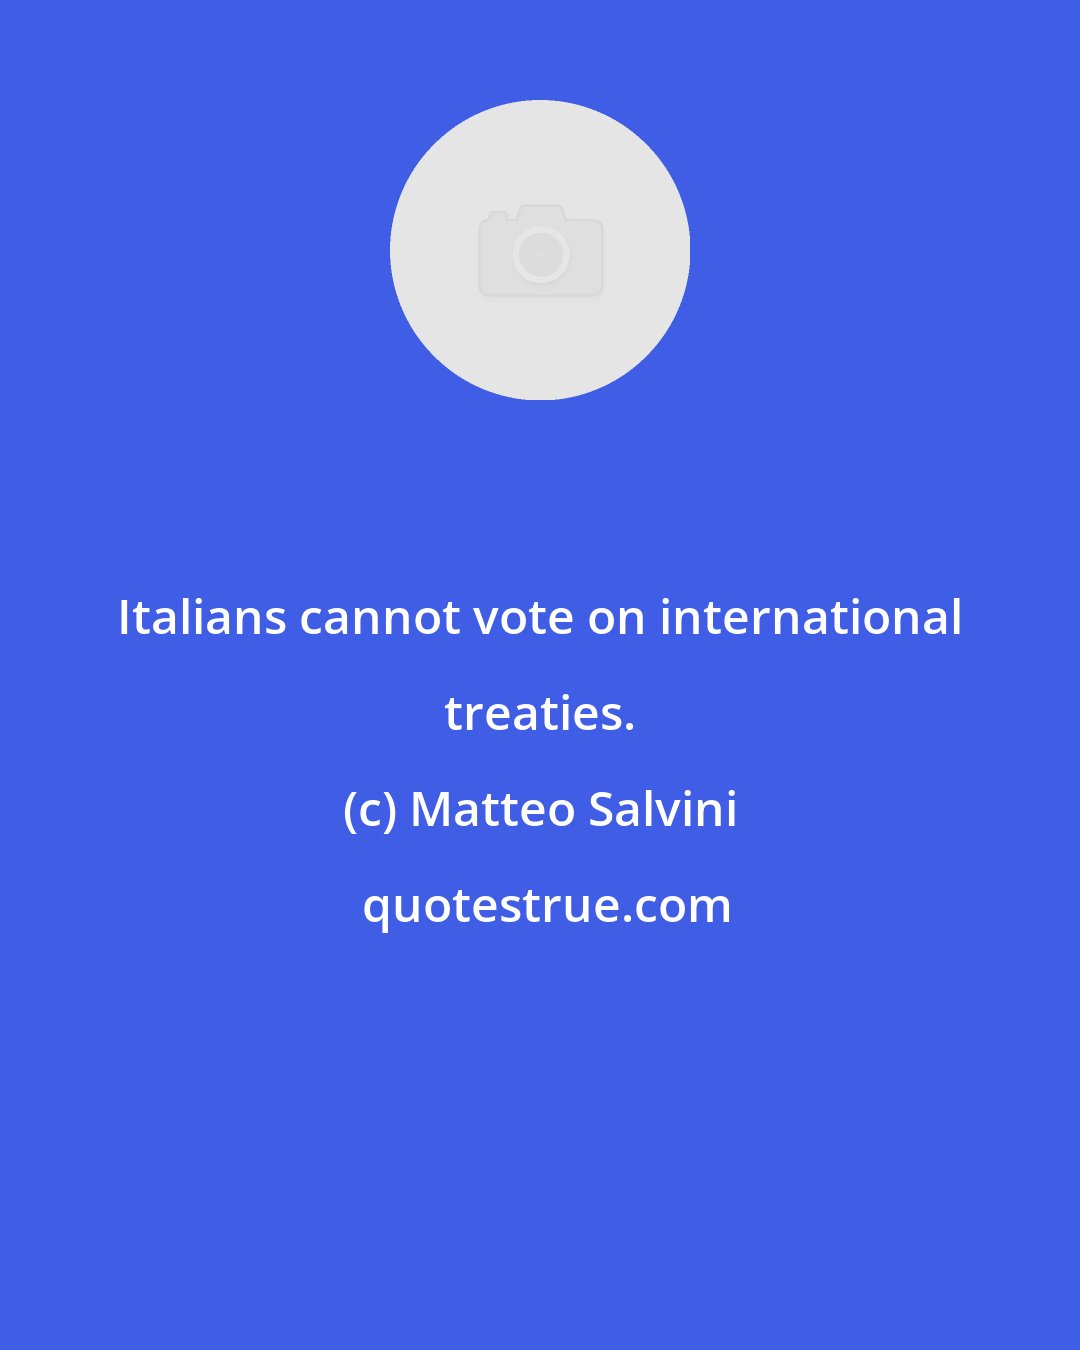 Matteo Salvini: Italians cannot vote on international treaties.